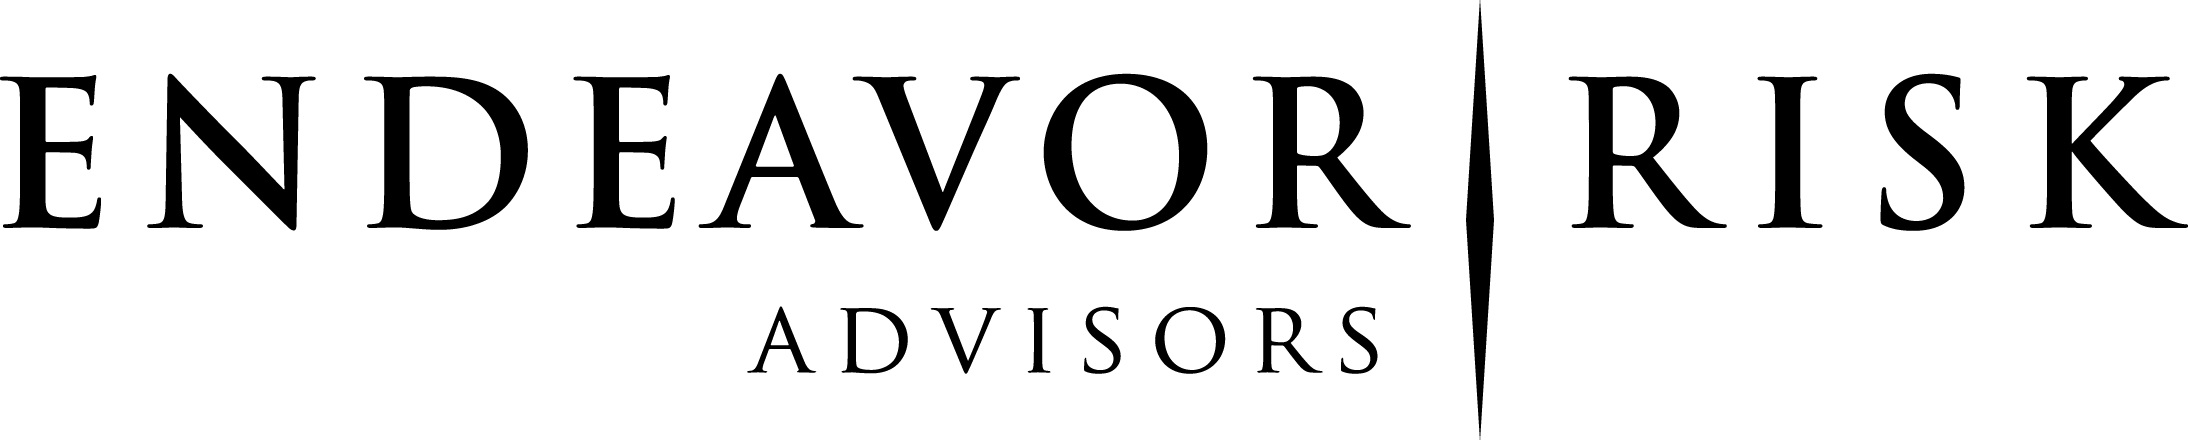 Endeavor Risk Advisors